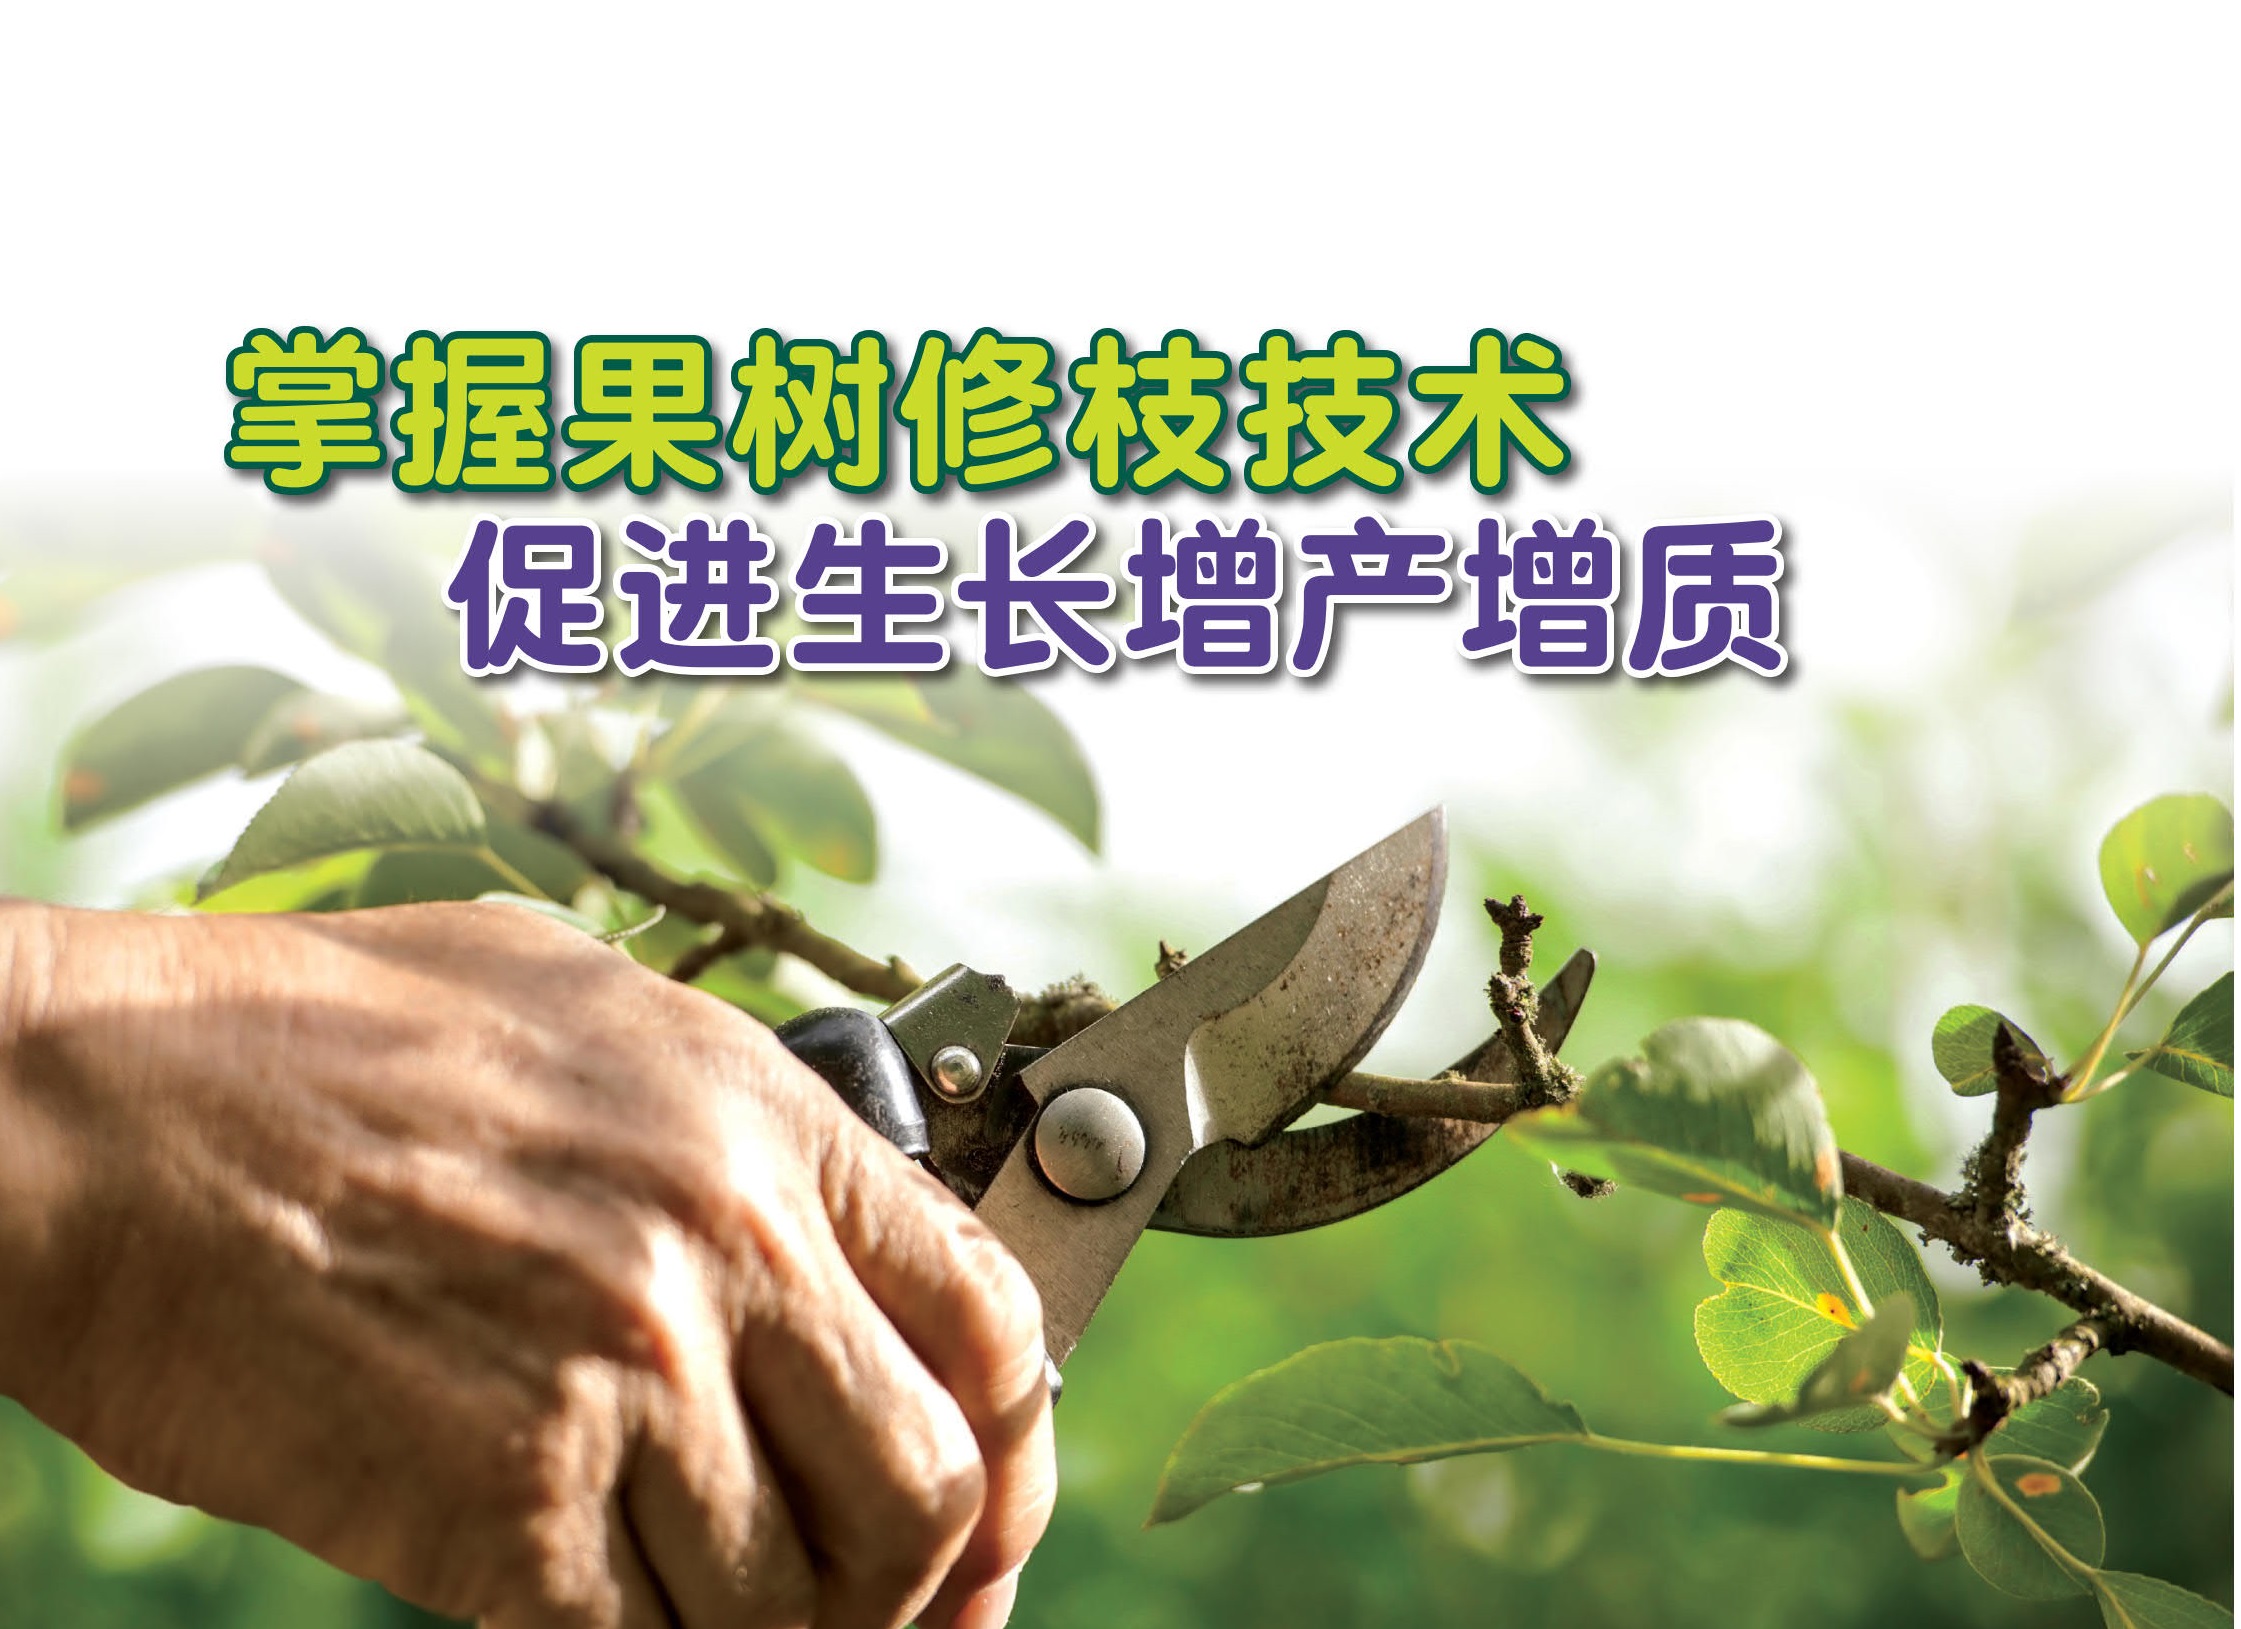 掌握果树修枝技术 促进生长增产增质 - 农牧世界